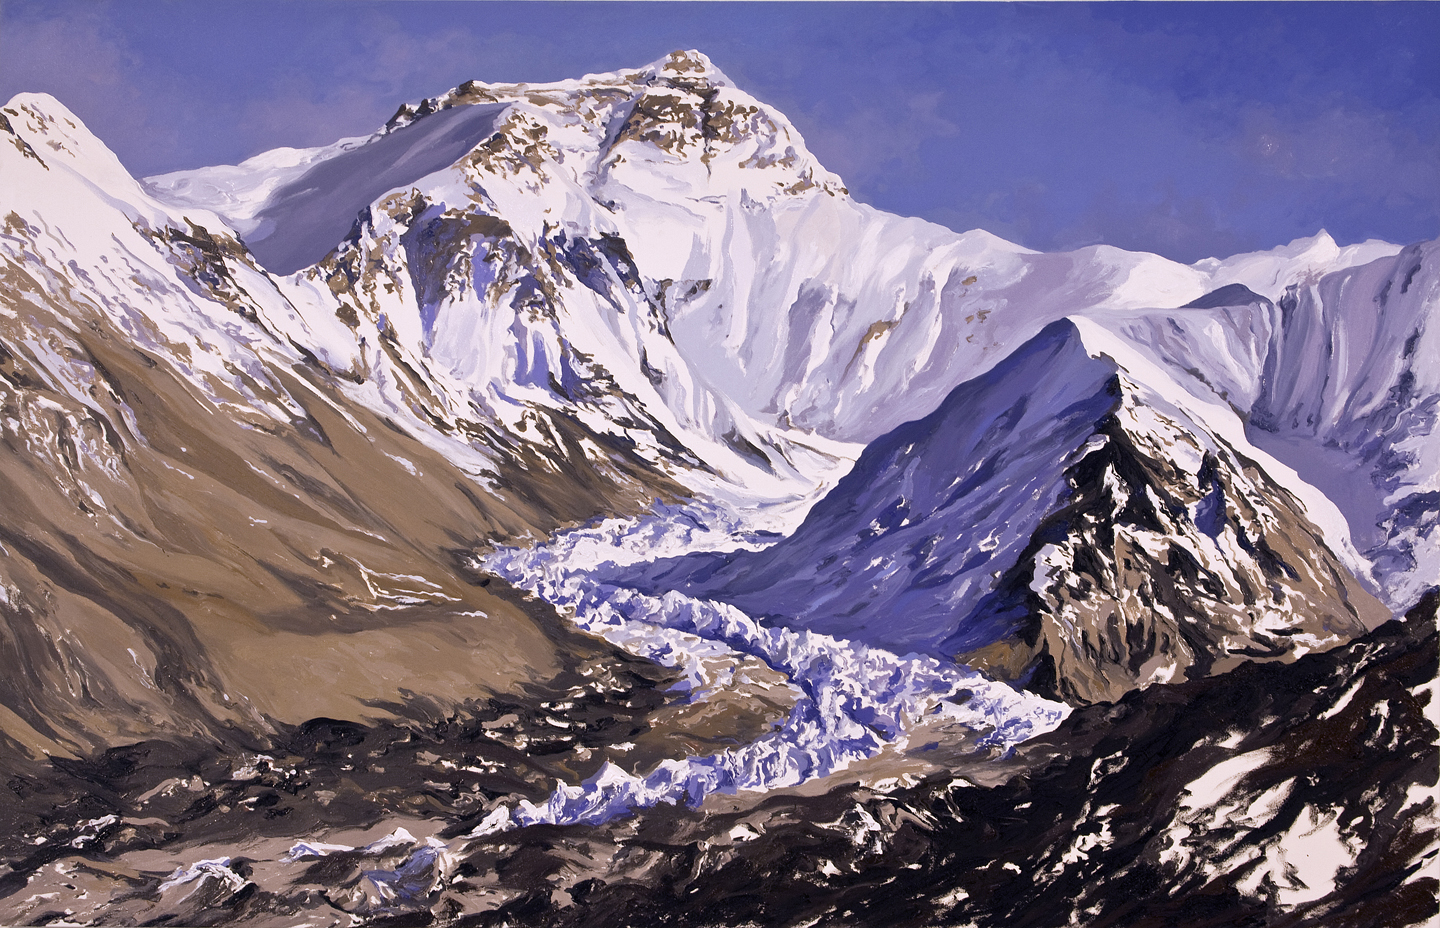 #2, Main Rongbuk Glacier, Tibet, 2007, after David Breashears